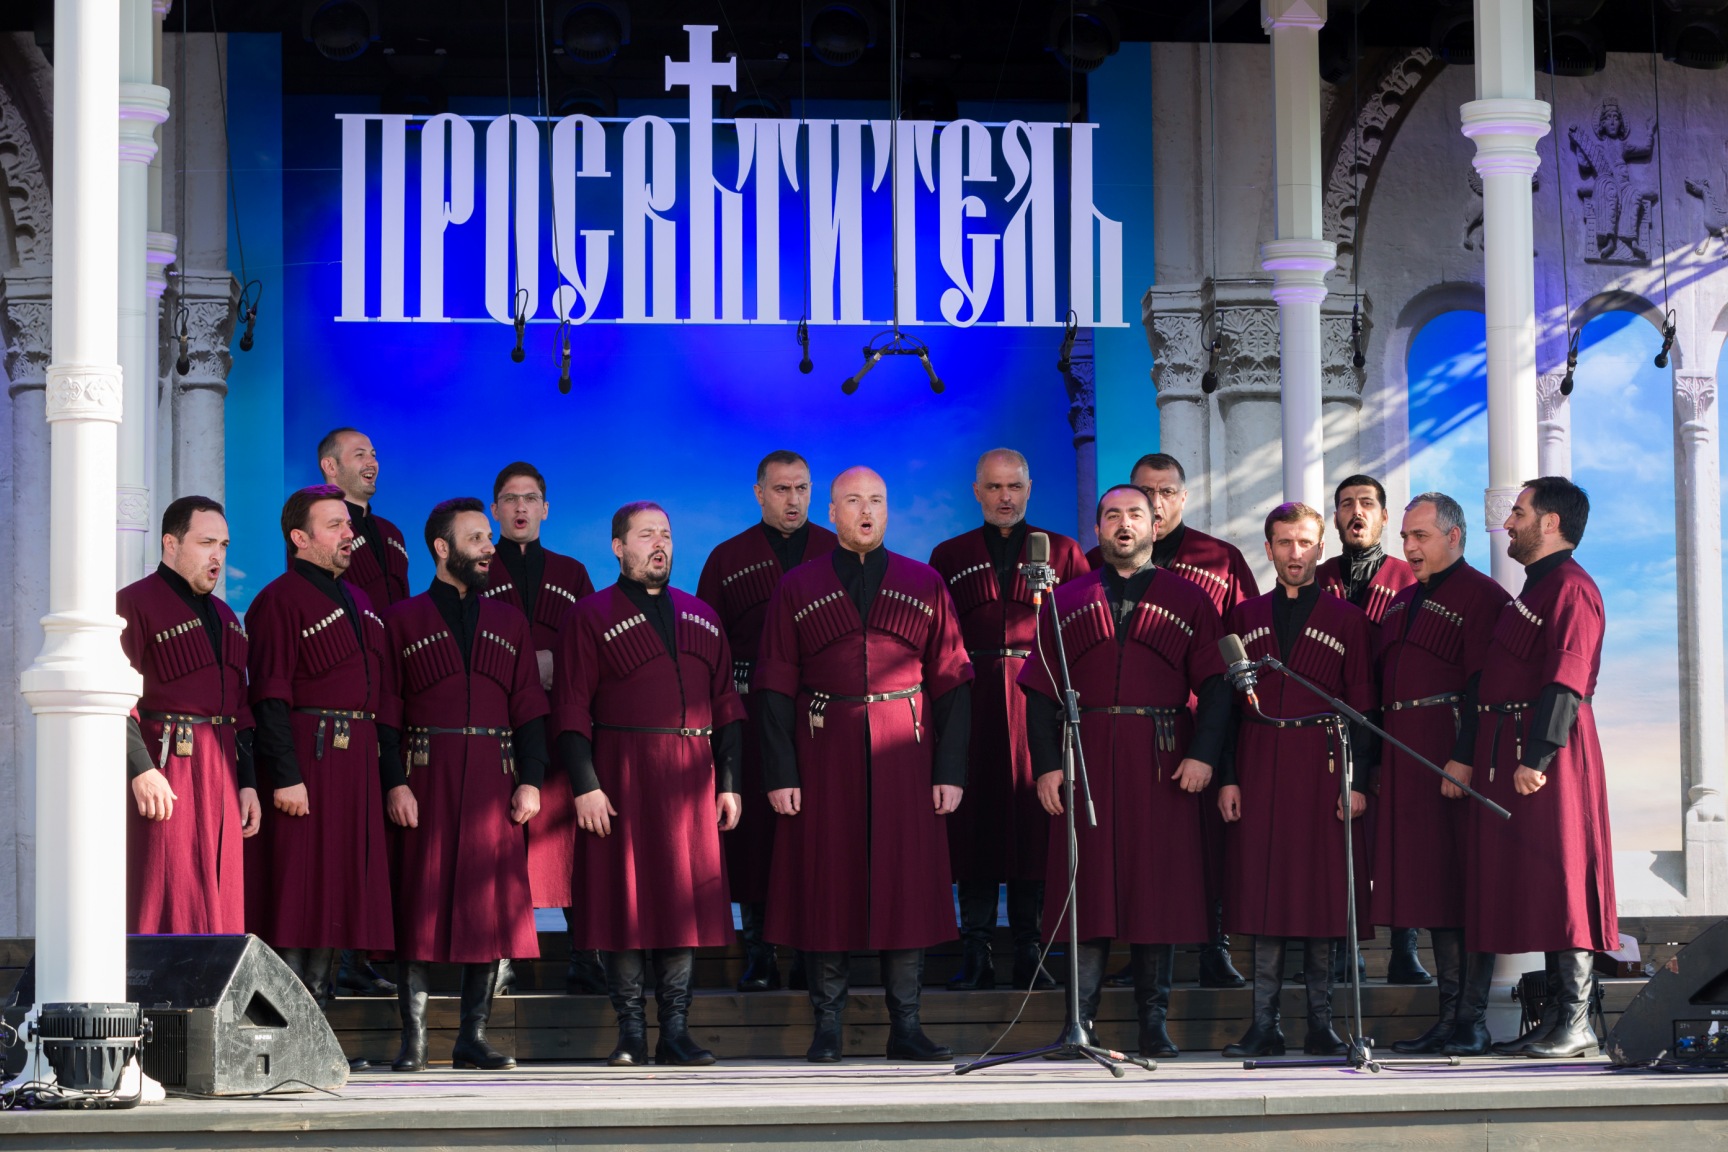 Валаамский хор православное песнопение